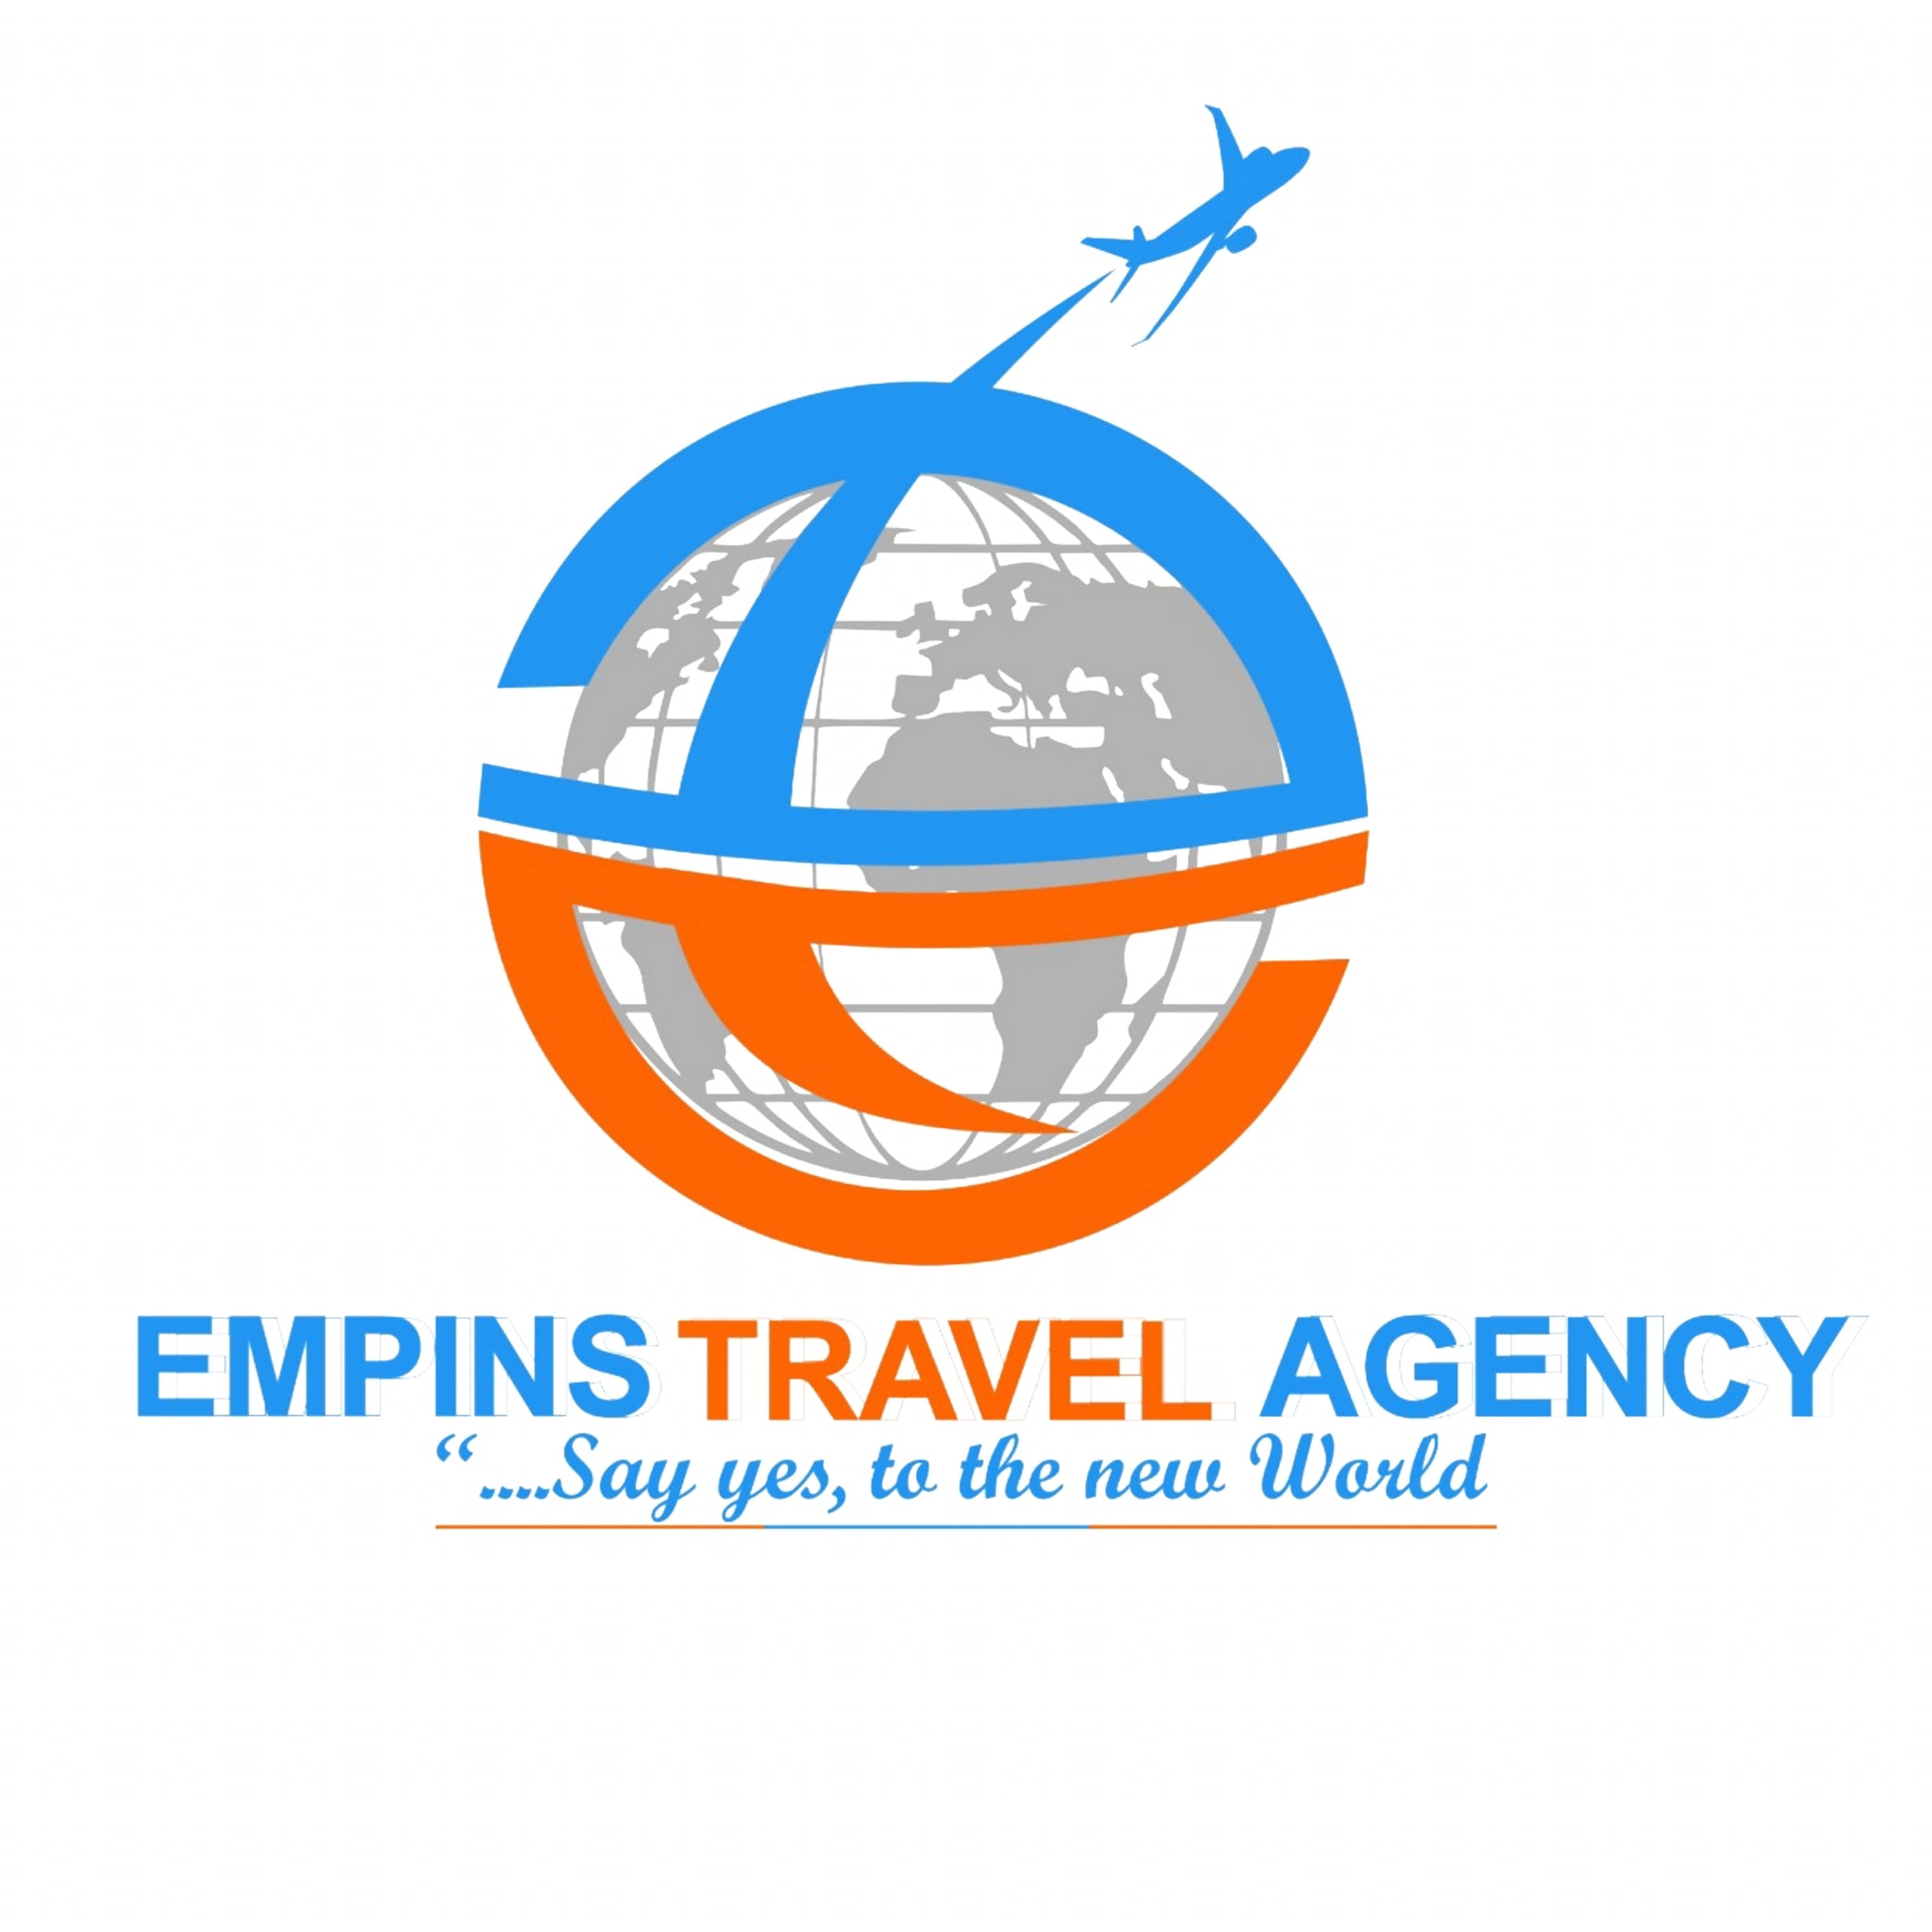 empins travel agency website